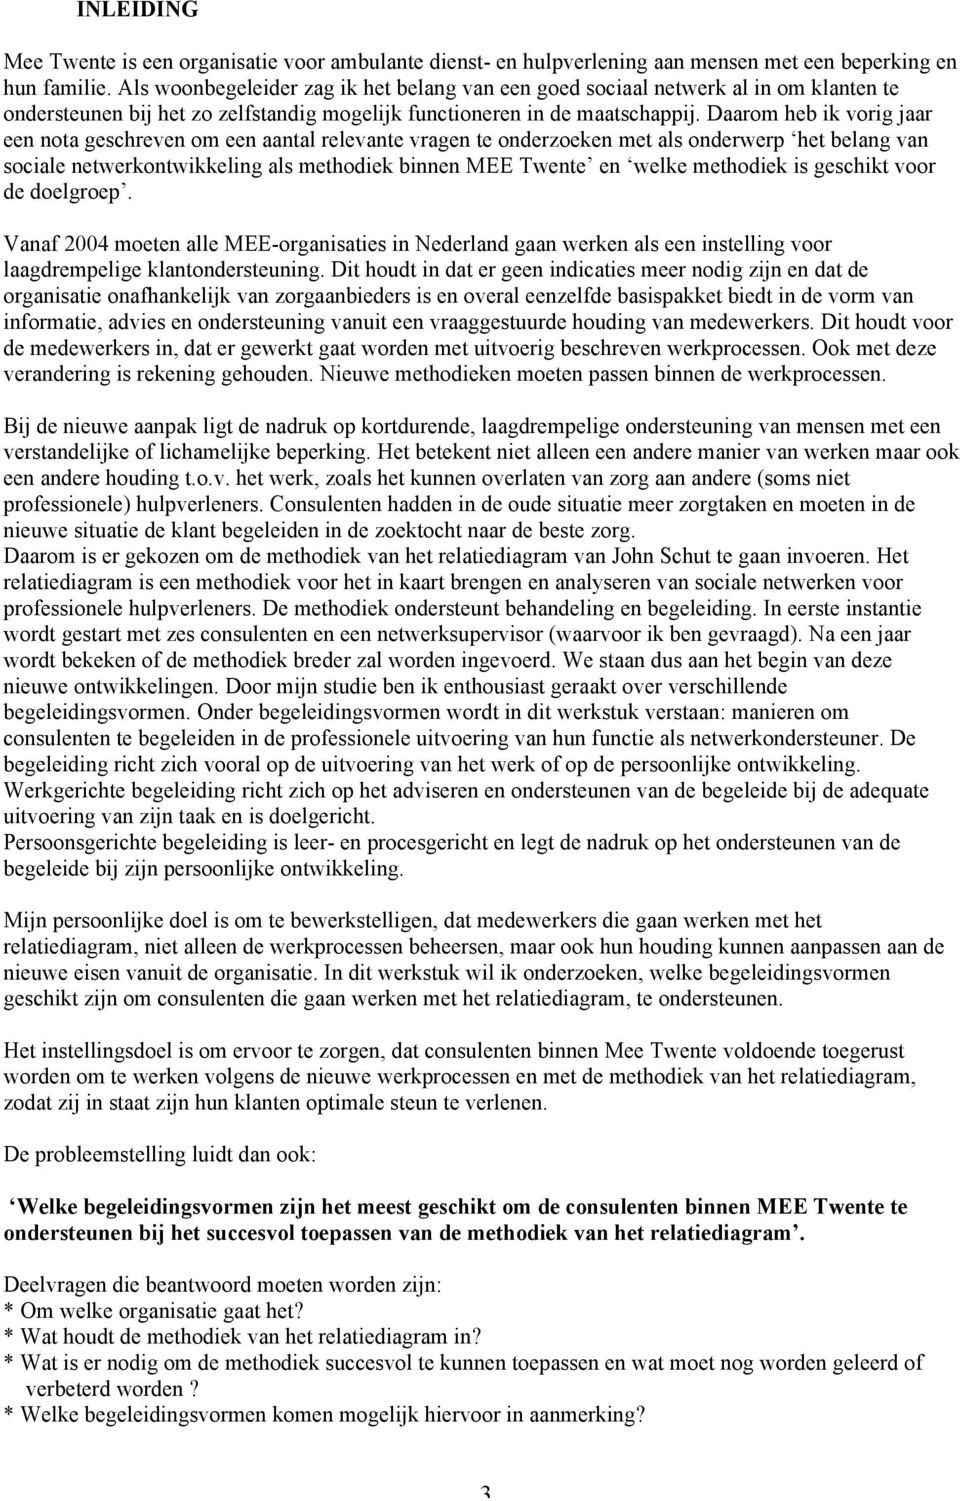 Daarom heb ik vorig jaar een nota geschreven om een aantal relevante vragen te onderzoeken met als onderwerp het belang van sociale netwerkontwikkeling als methodiek binnen MEE Twente en welke